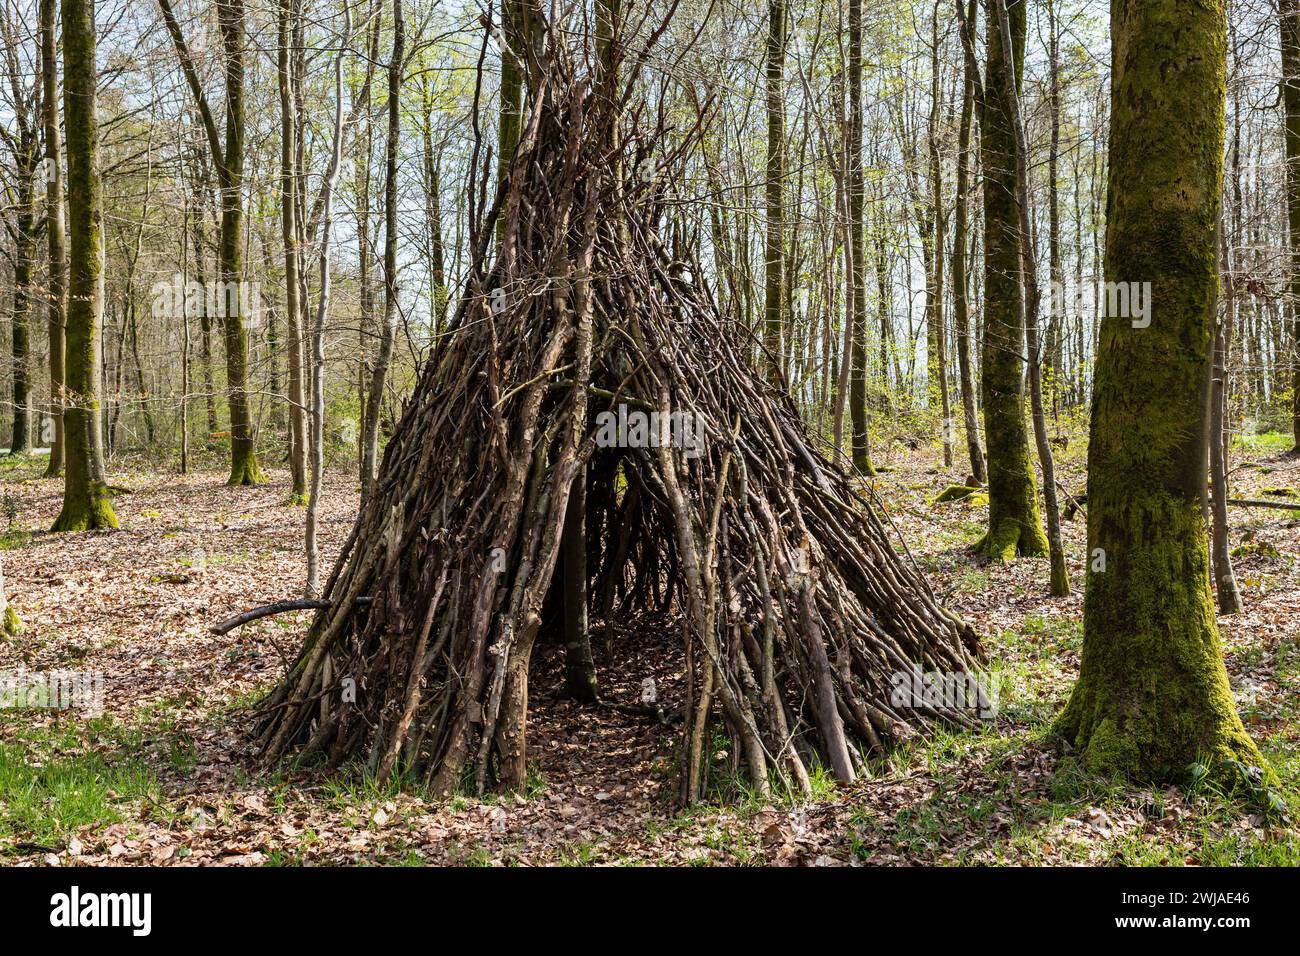 Tipi fabriqué à partir de branches d’arbres dans la forêt, cabanes en bois dans la forêt d’Eawy, dans le pays de Bray, une région naturelle du nord de la France. Huttes en bois i Banque D'Images